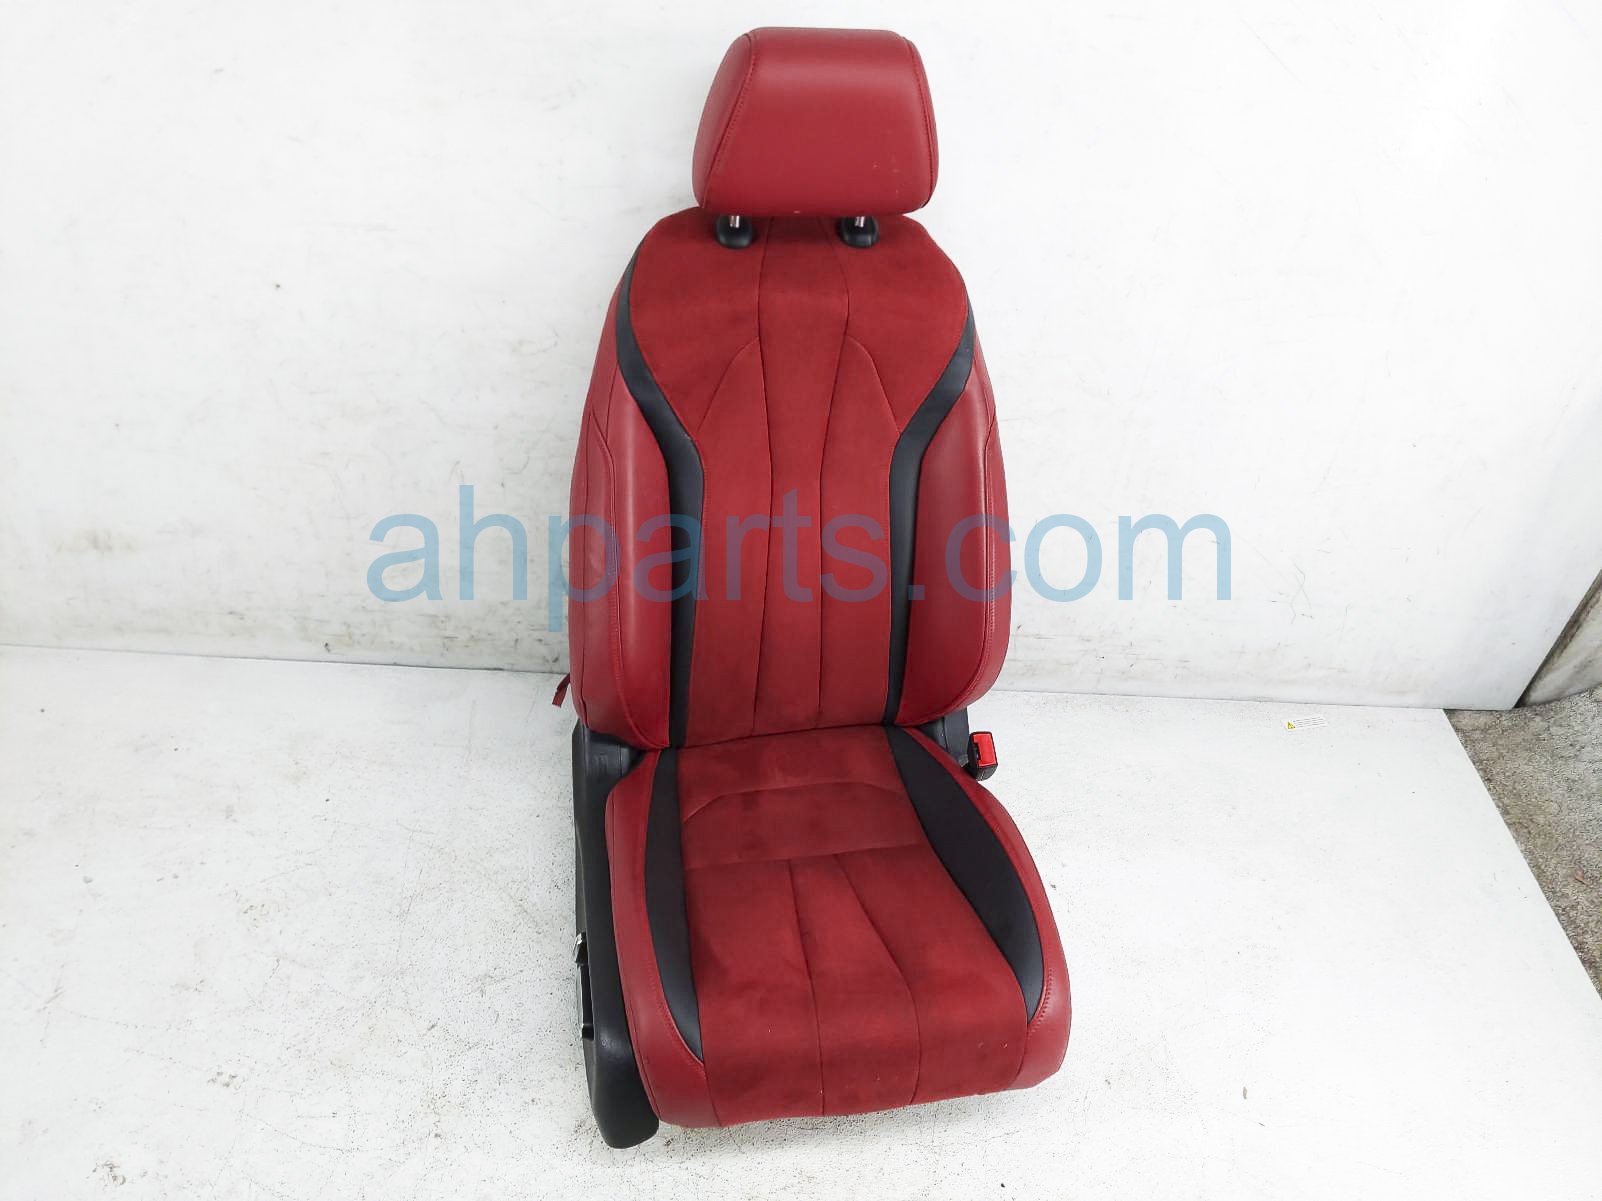 $400 Acura FR/RH SUEDE RED/BLK SEAT -- W/O BAG*